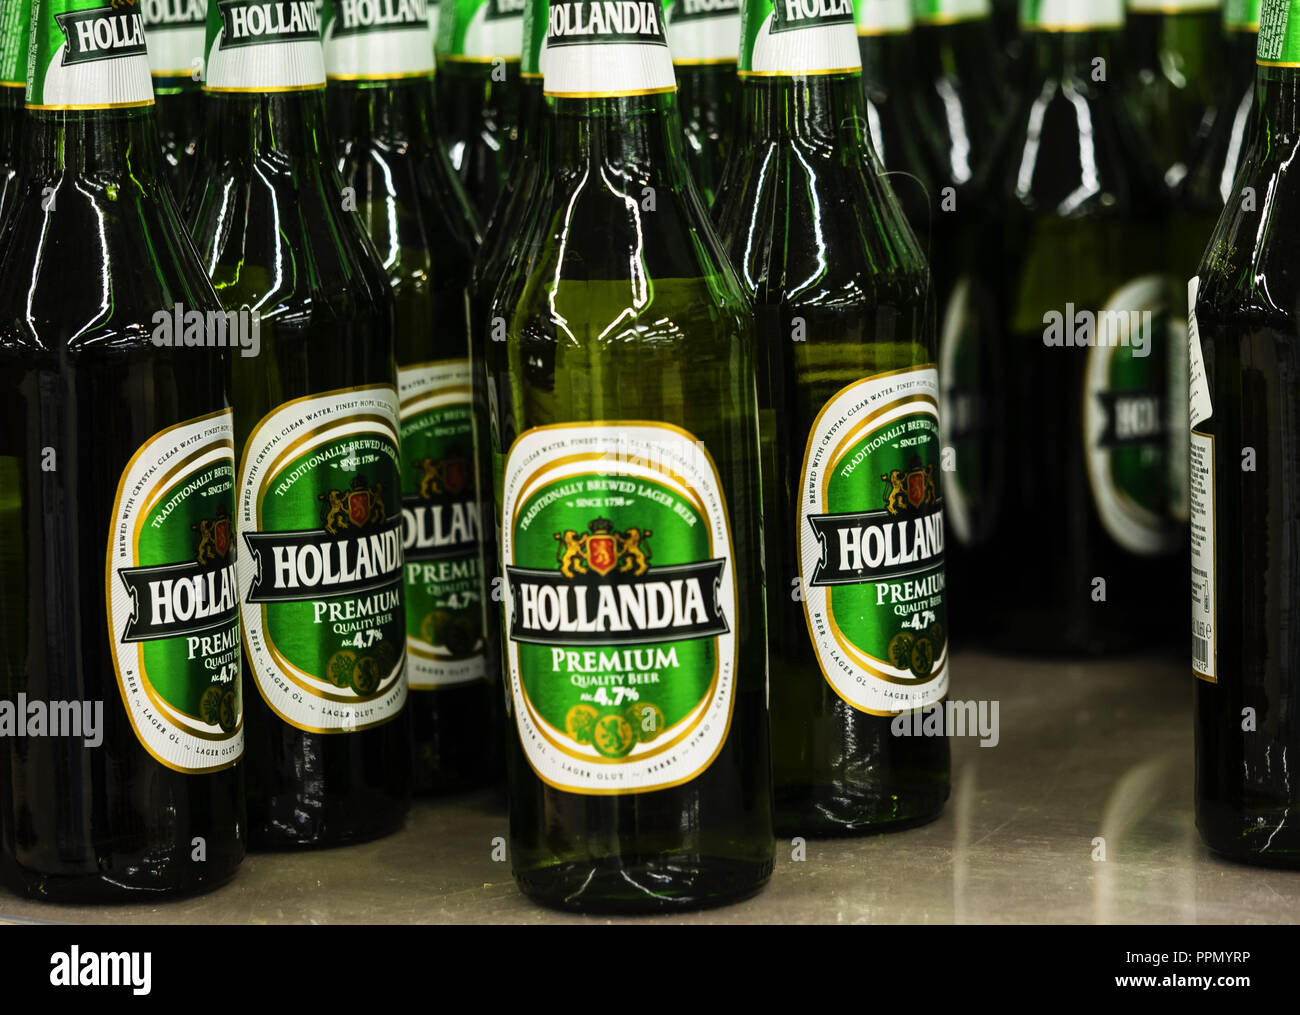 Hollandia Bier Stockfotos Und Bilder Kaufen Alamy